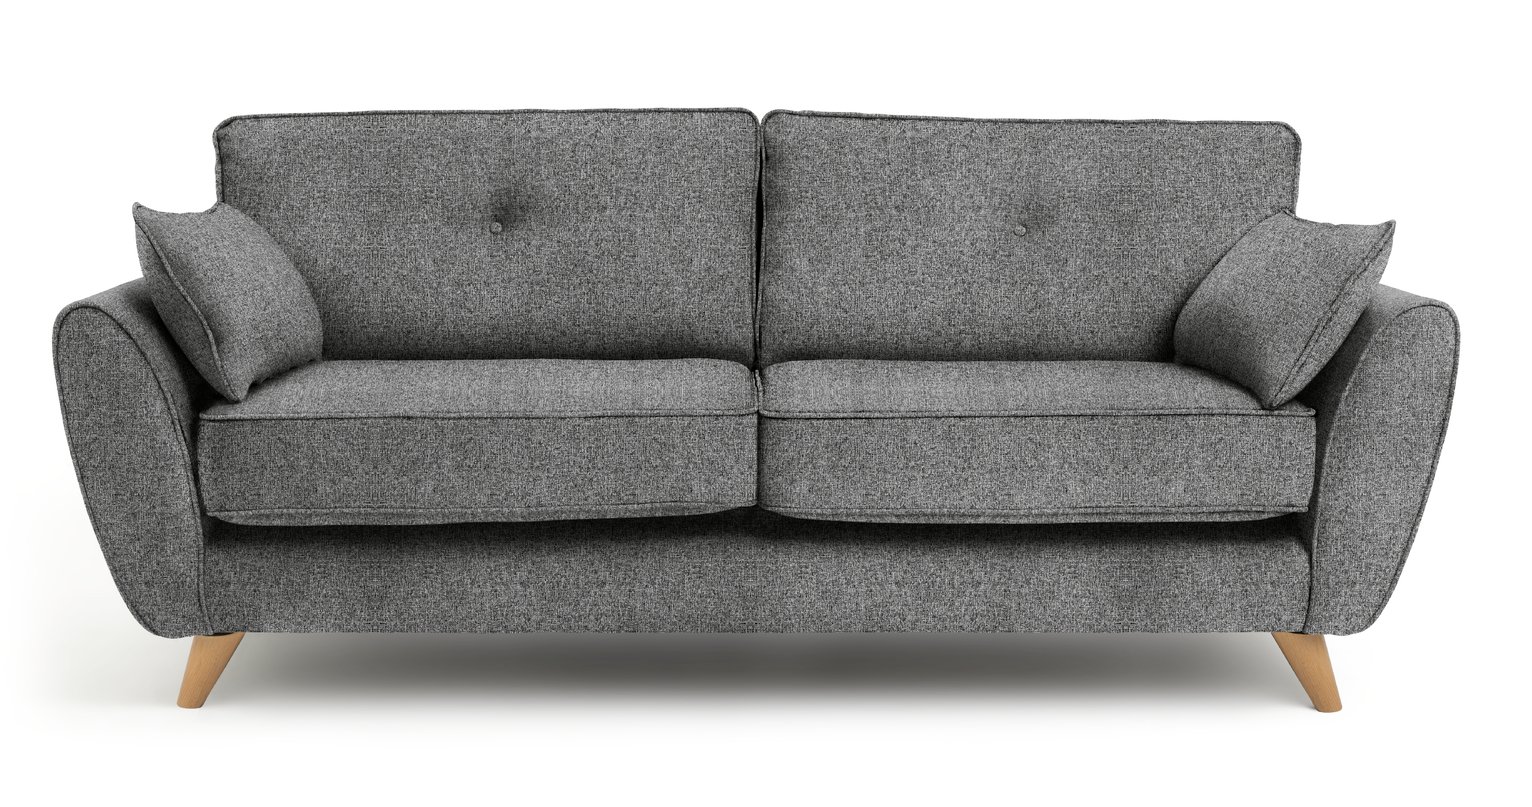 Habitat Isla 3 Seater Fabric Sofa - Grey